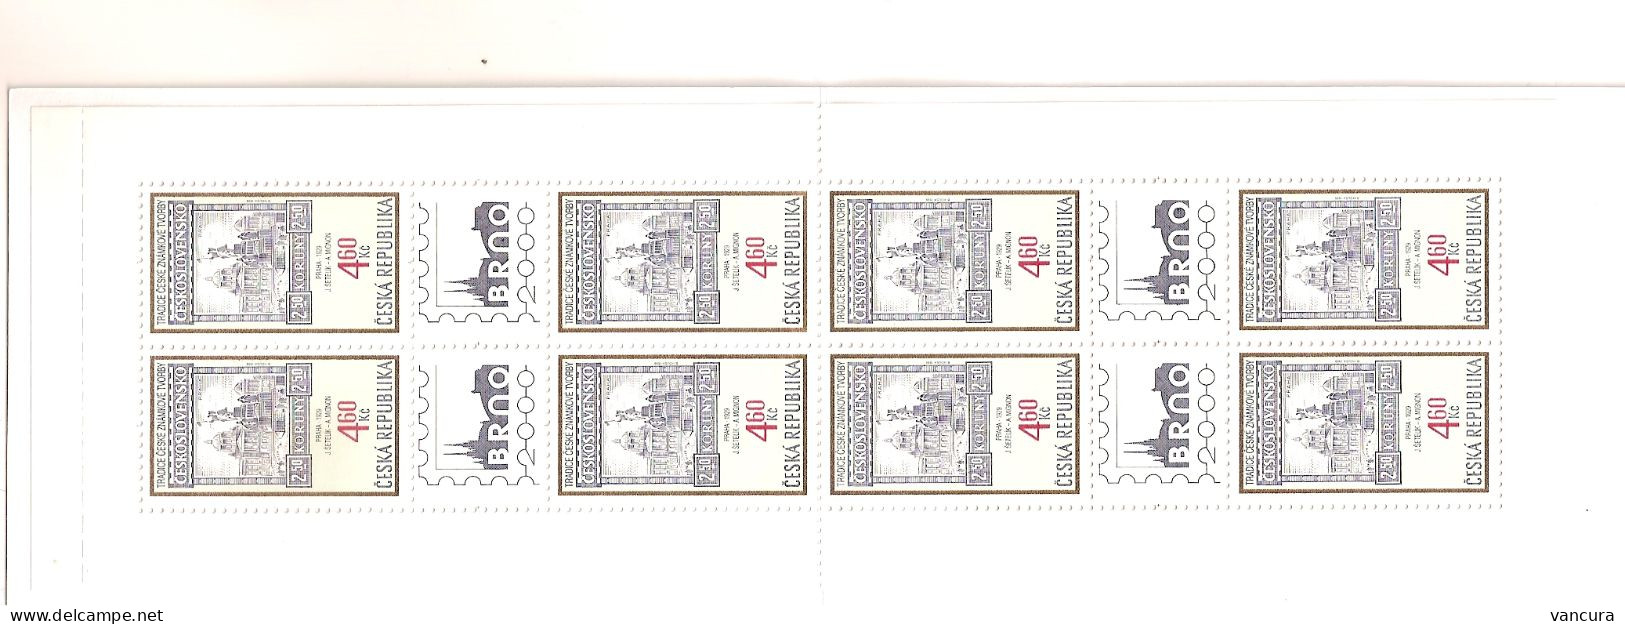 Booklet 204 Czech Republic Czech Stamp Design 1999 National Museum In Prague And The Statue Of St Wenceslas - Ongebruikt